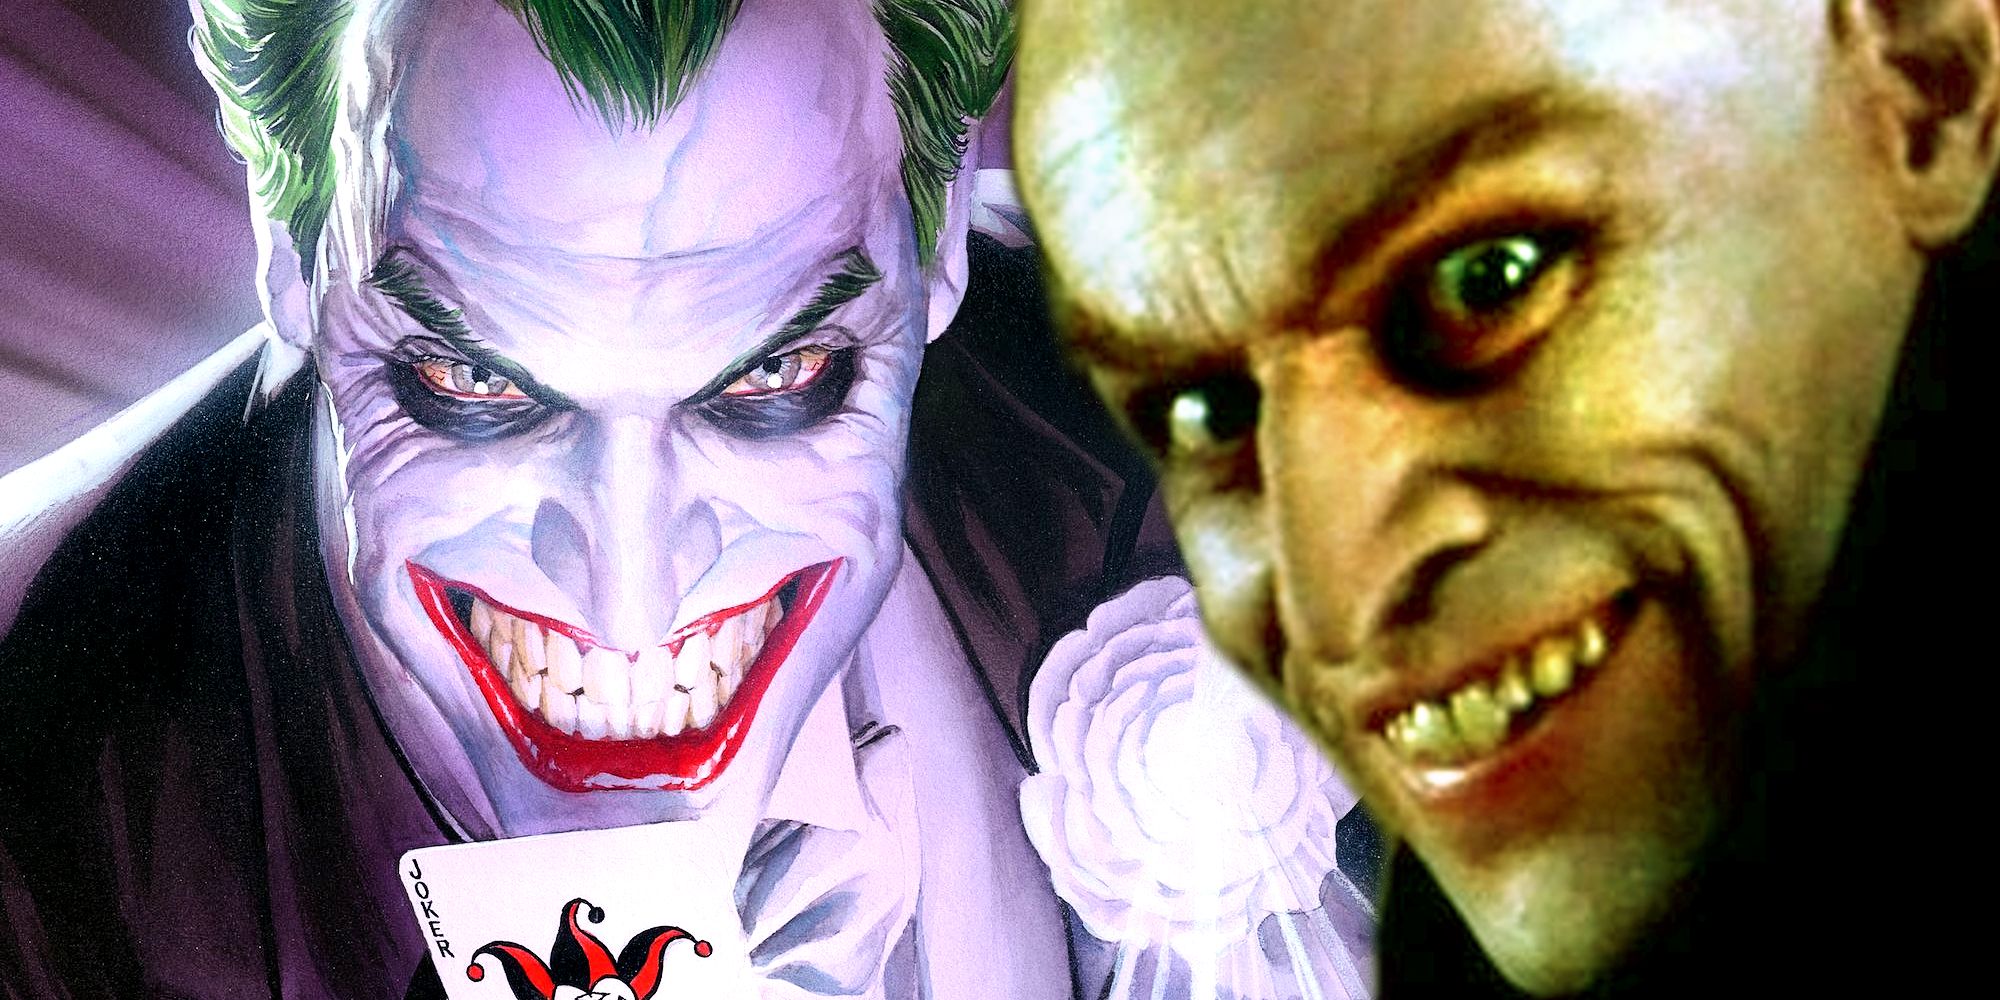 Willem Dafoe as Nosferatu and the Joker in DC Comics